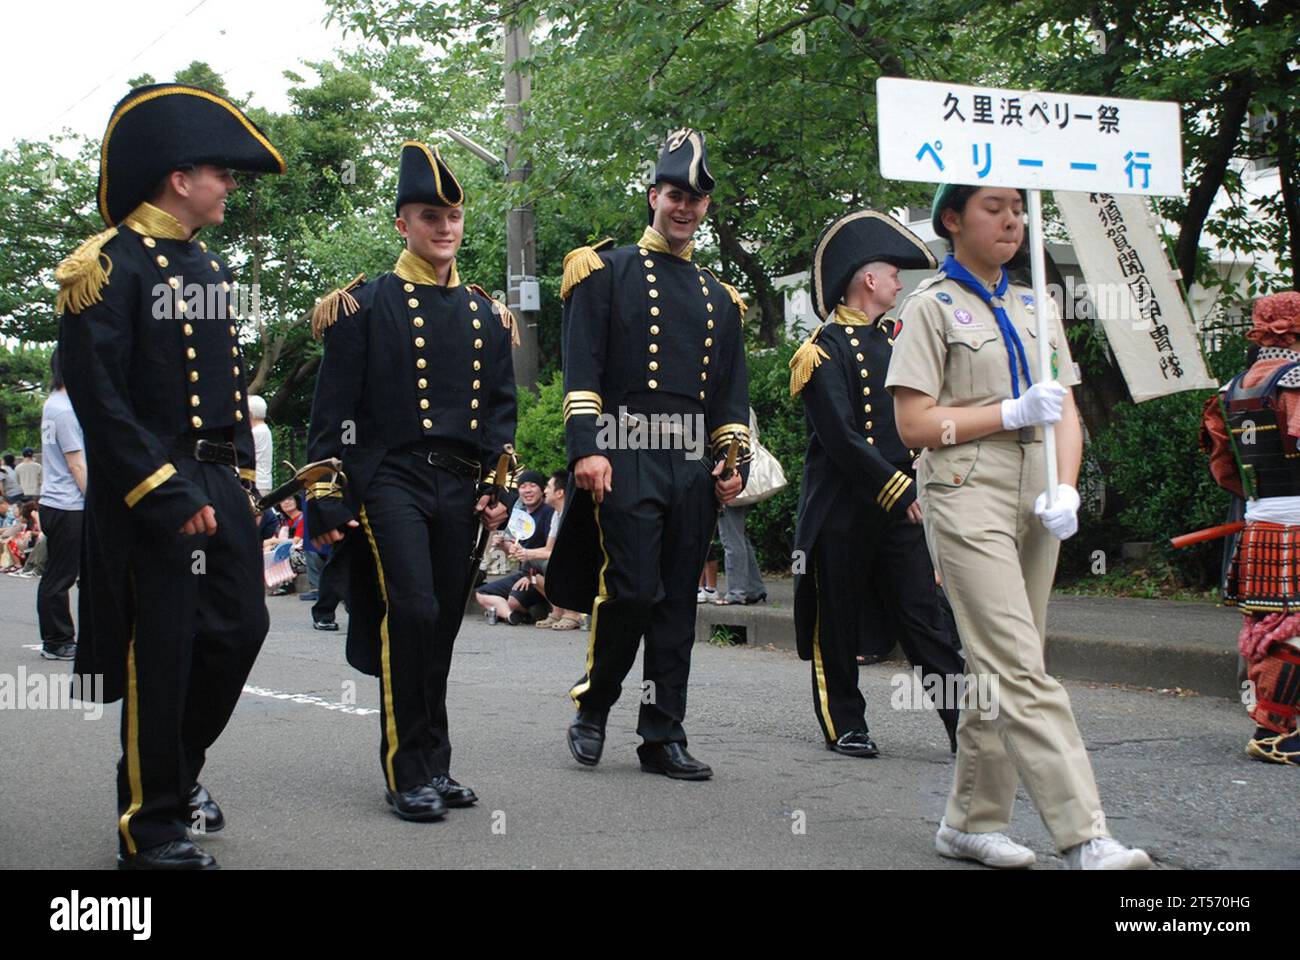 Yokosuka, membre du parti officiel du commodore Matthew C. Perry lors de son arrivée au Japon, marche lors de la parade Tokyo Jidai Matsuri en Asakusa.jpg Banque D'Images